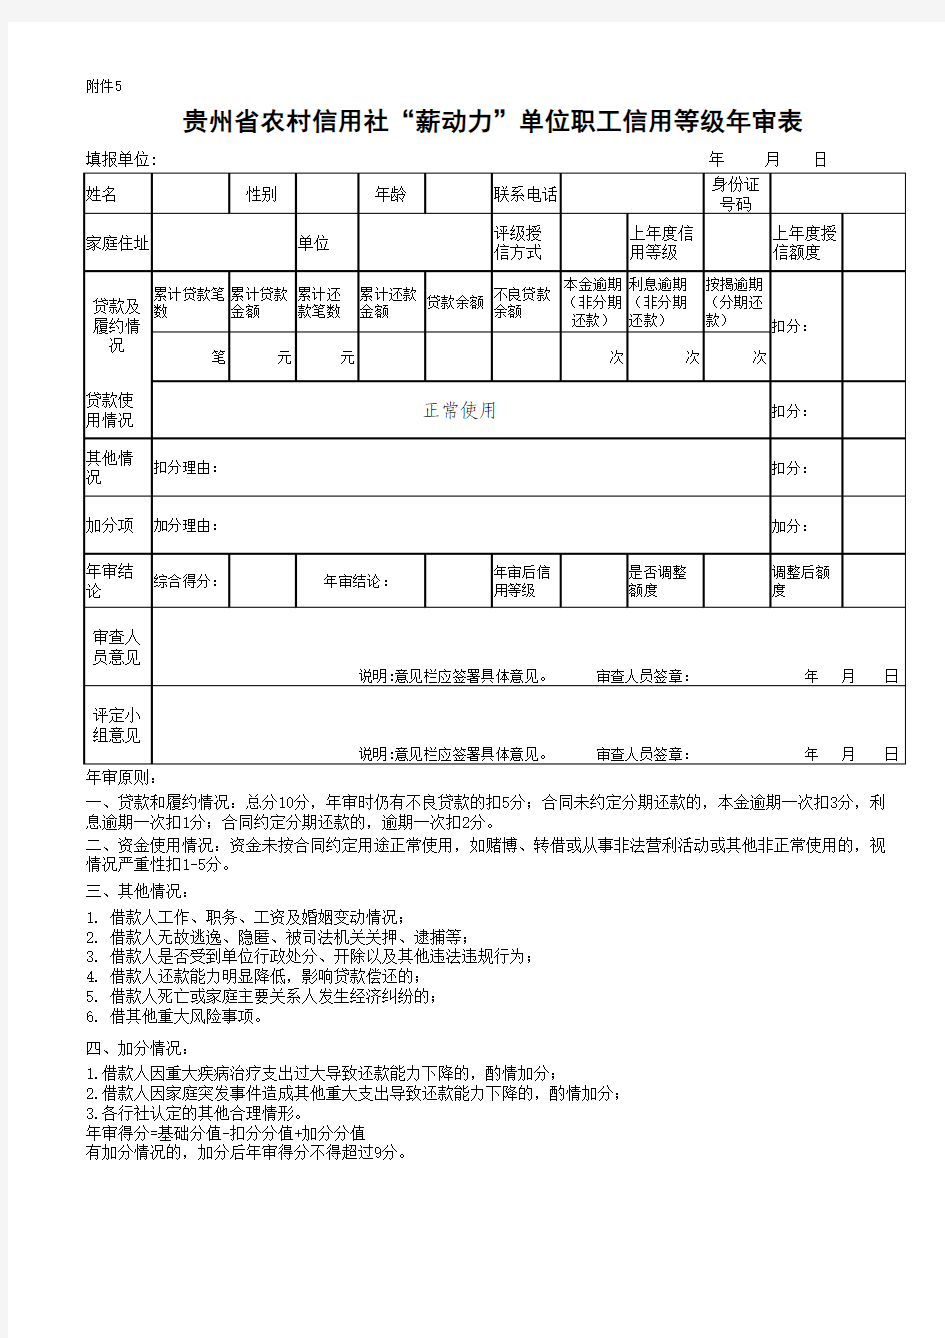 贵州省农村信用社“薪动力”单位职工个人评级授信审批表附件5